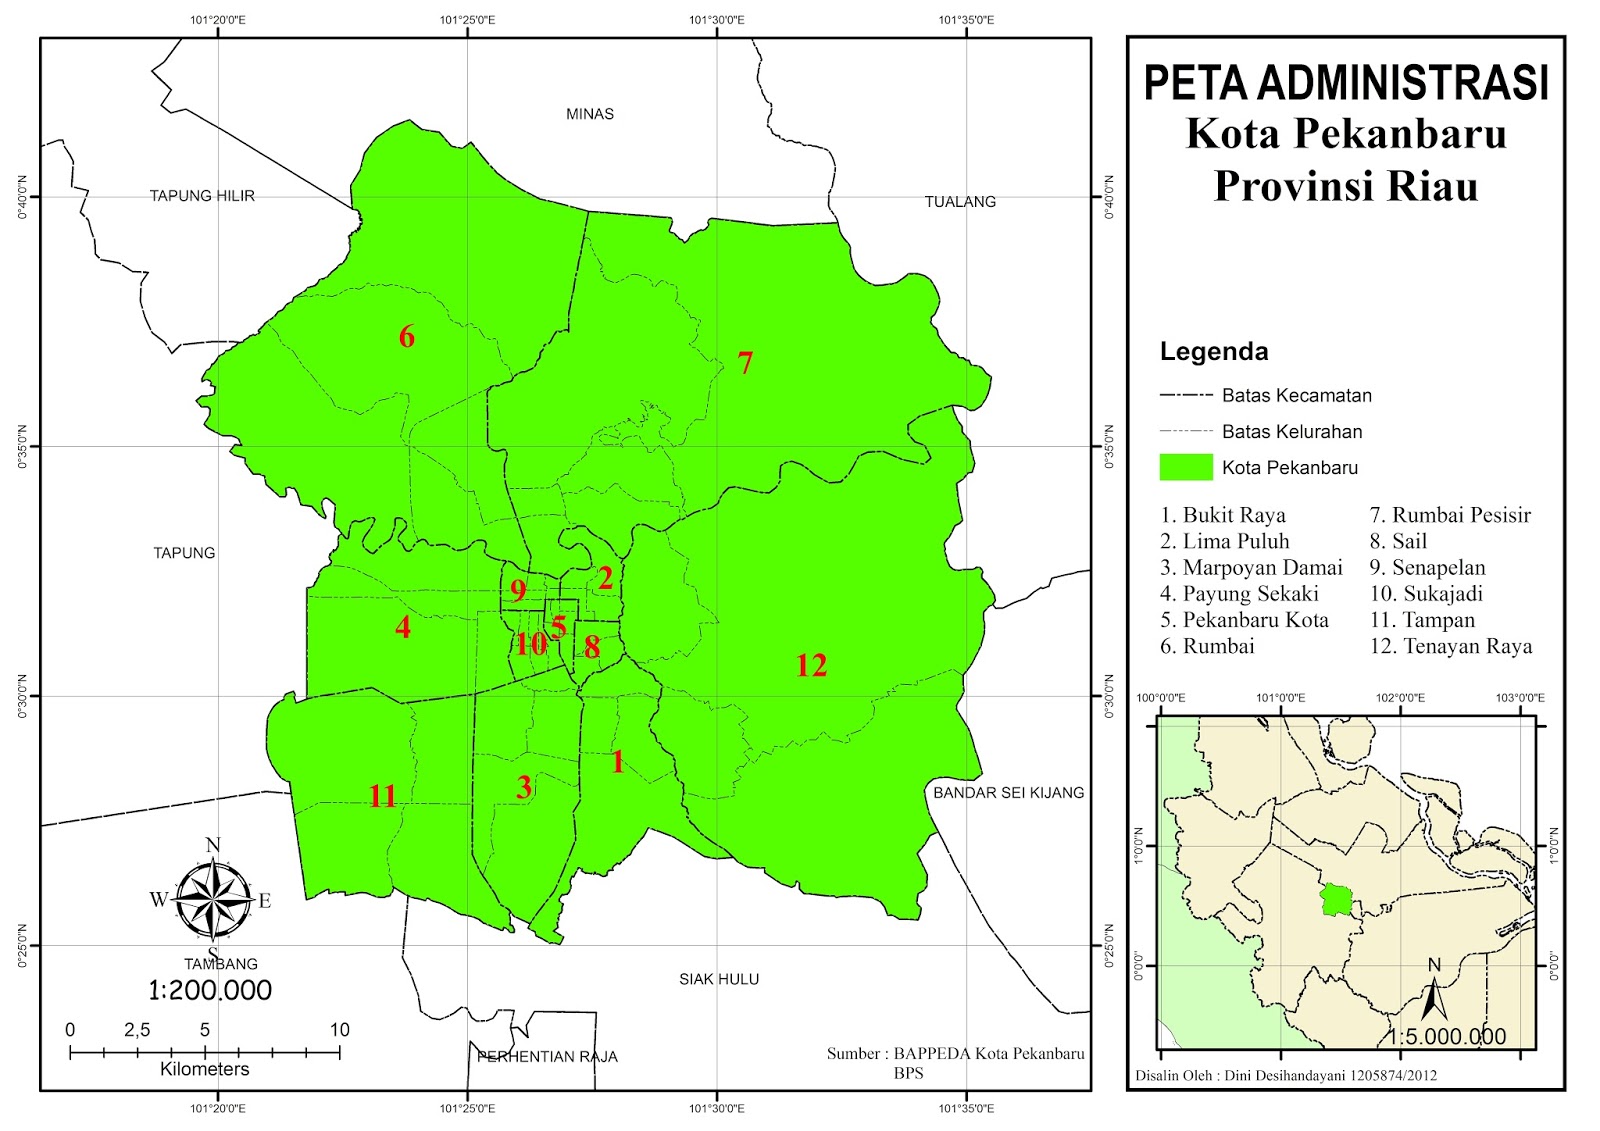 gubuk-derita-peta-administrasi-kota-pekanbaru